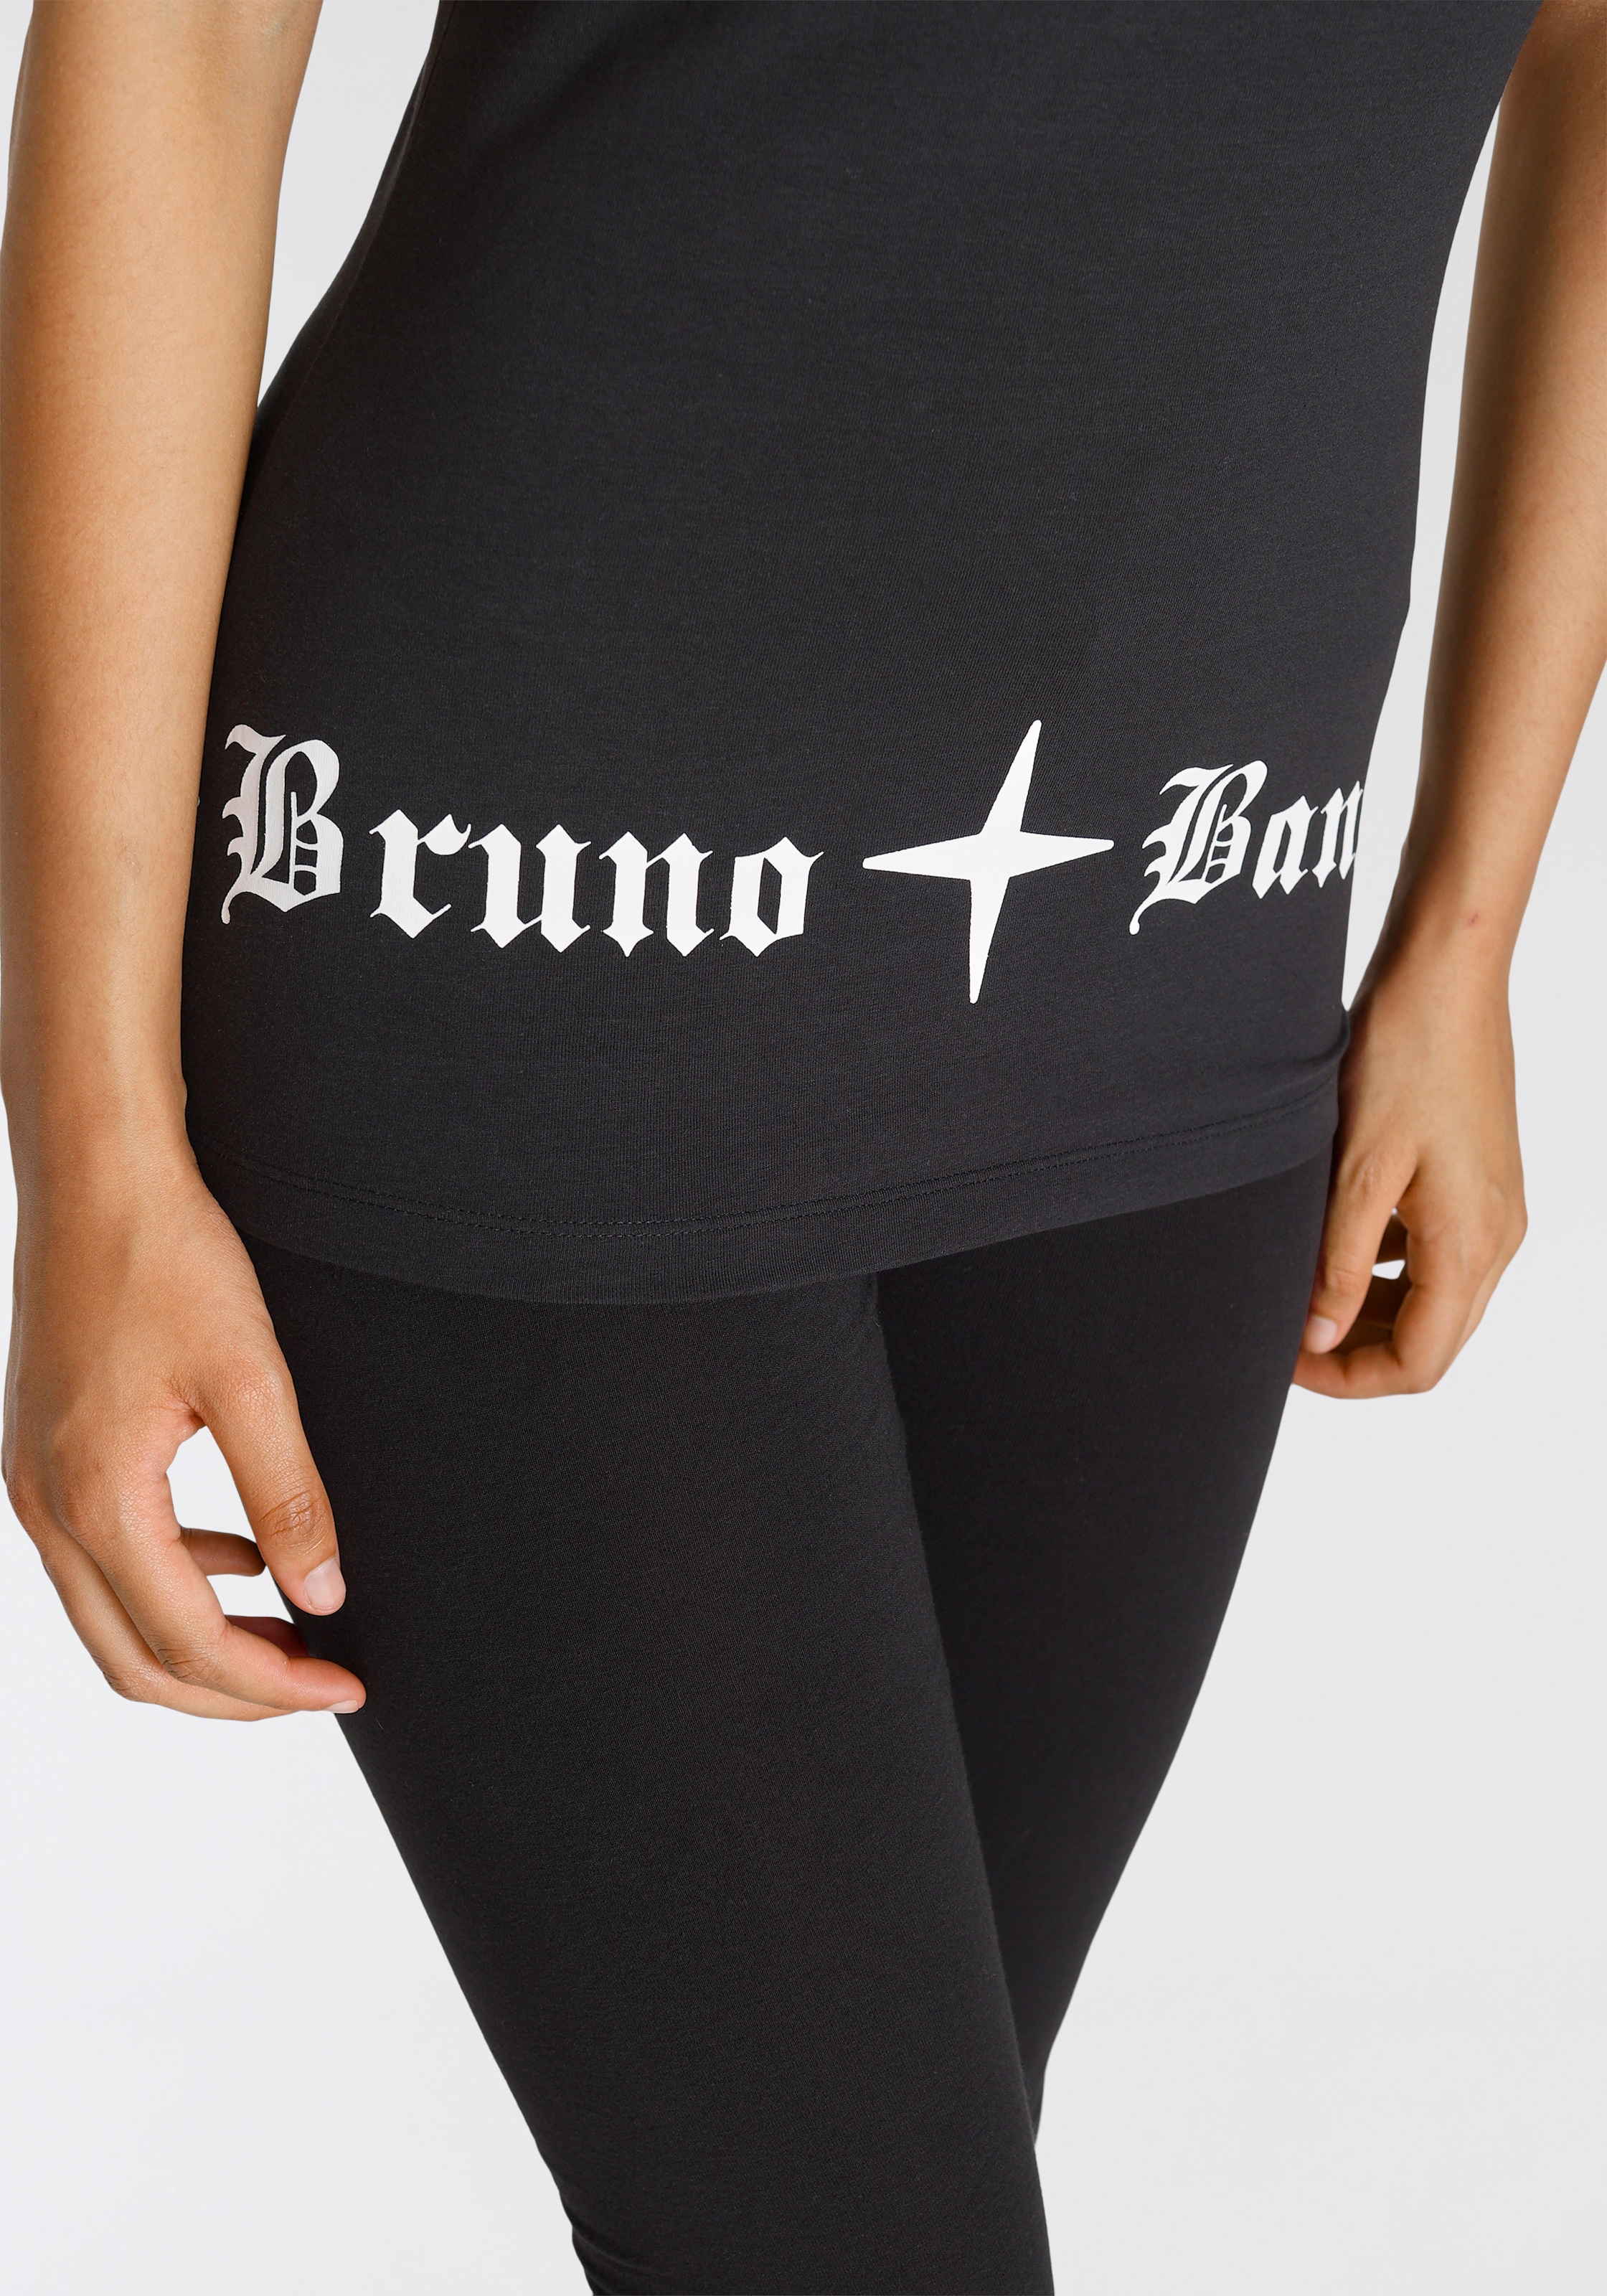 der Bruno KOLLEKTION für NEUE Banani BAUR bestellen Hüfte | Druck T-Shirt, an